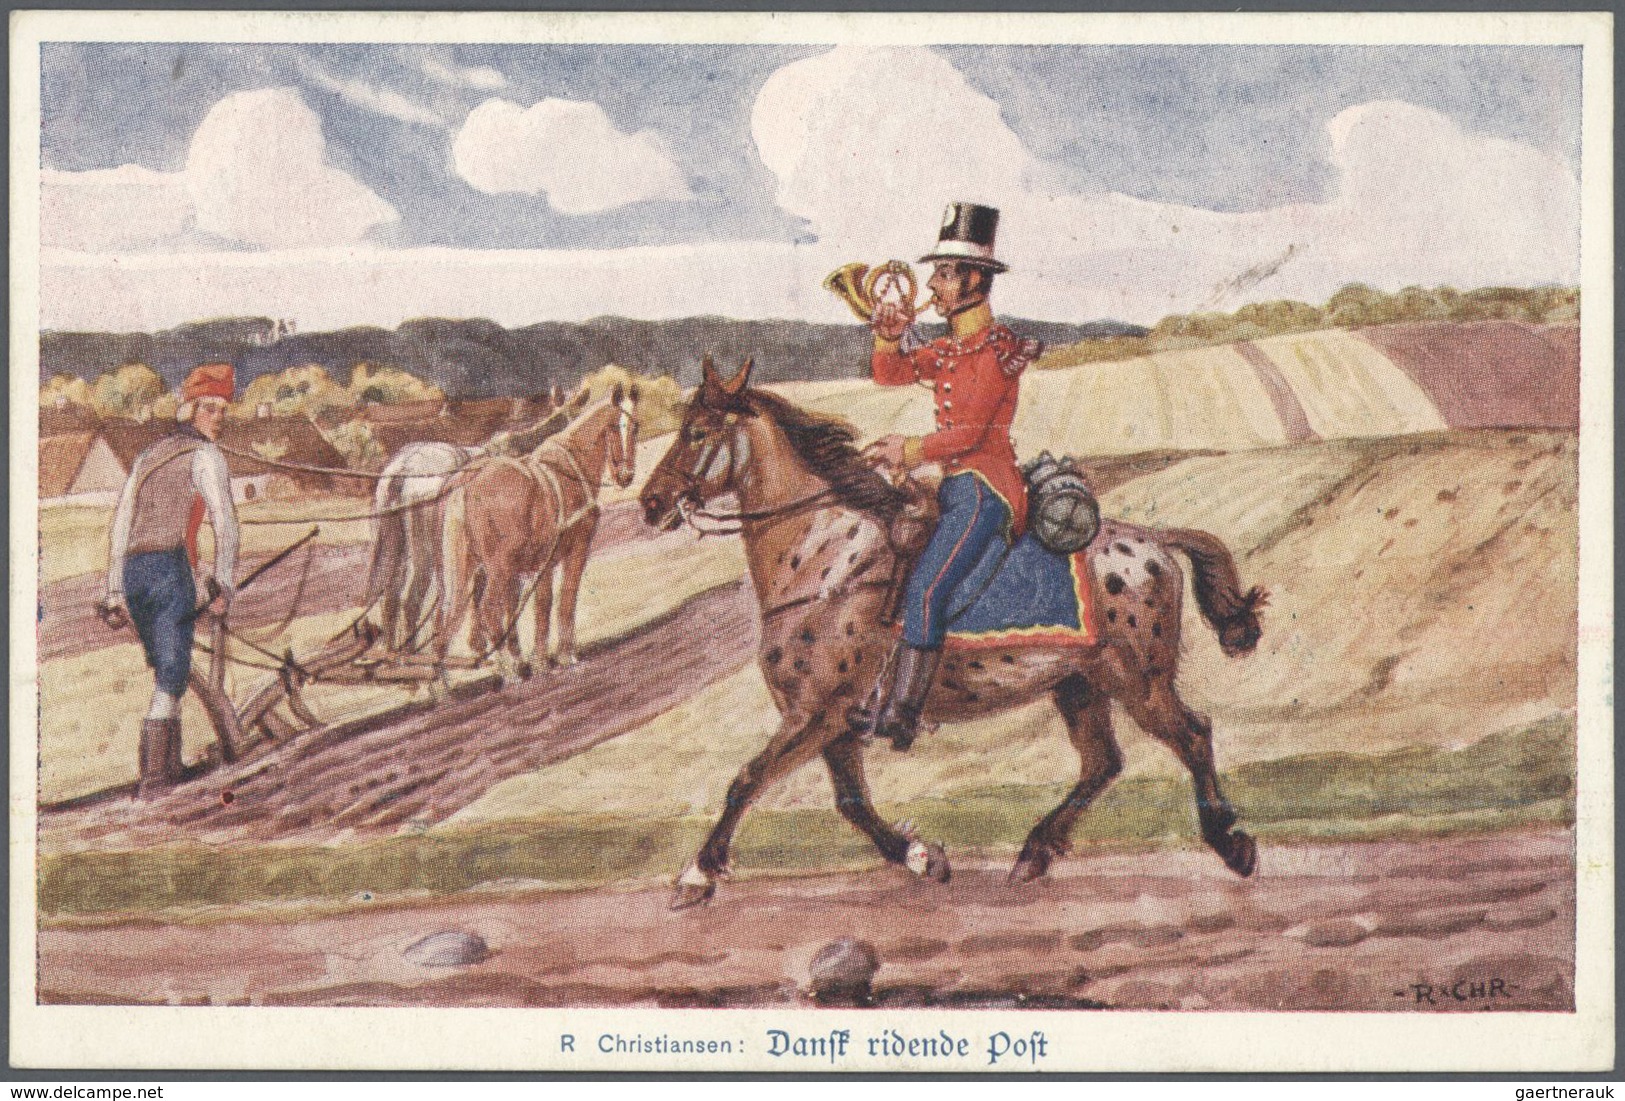 25765 Thematik: Tiere-Pferde / animals-horses: 1860/2000 (ca.), vielseitiger Sammlungsposten von ca. 240 B